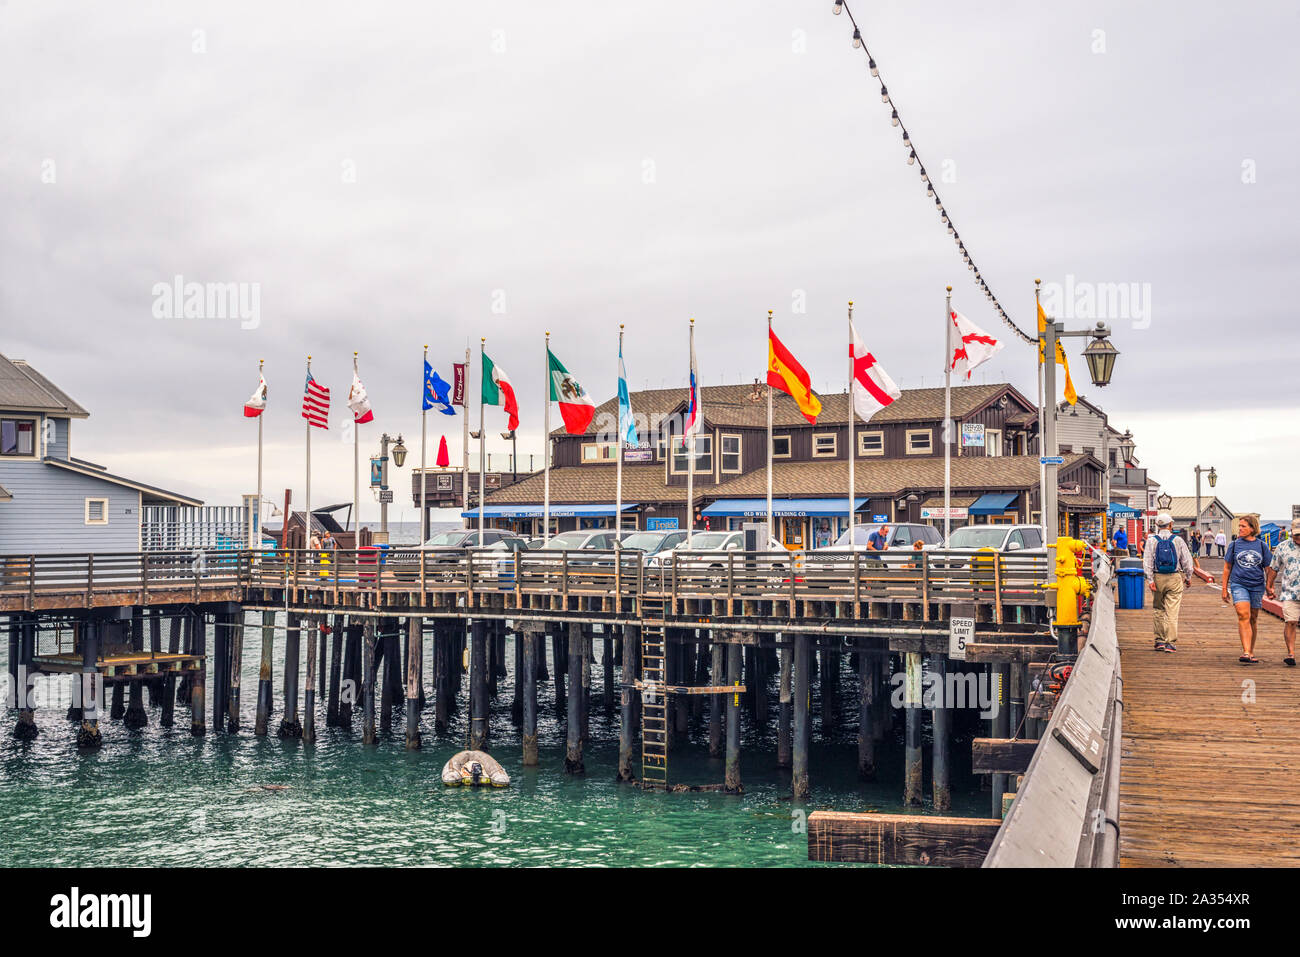 Stearns Wharf. Santa Barbara, Californie, USA. Banque D'Images